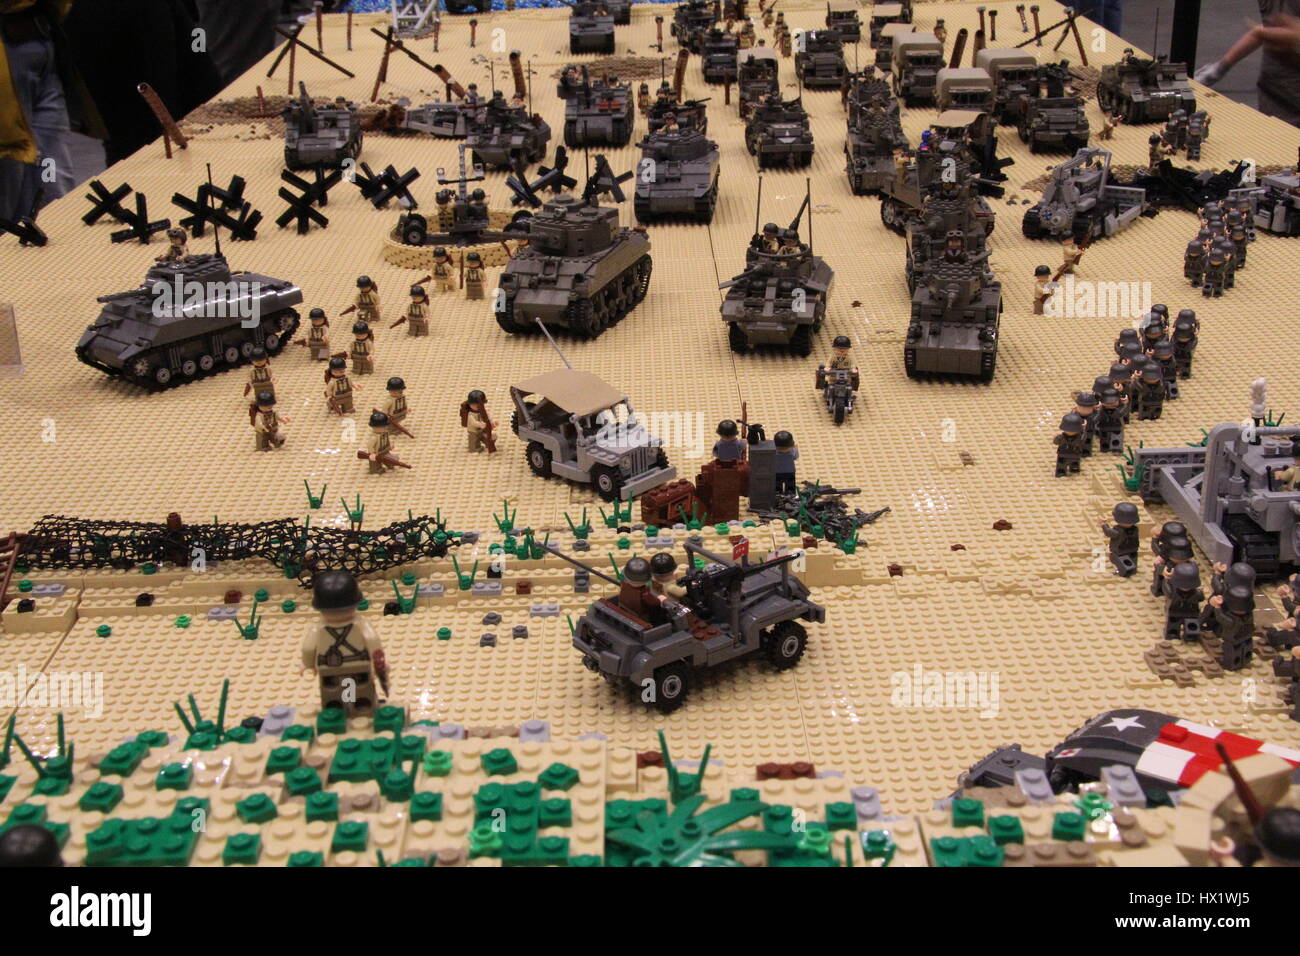 Lego wwii immagini e fotografie stock ad alta risoluzione - Alamy